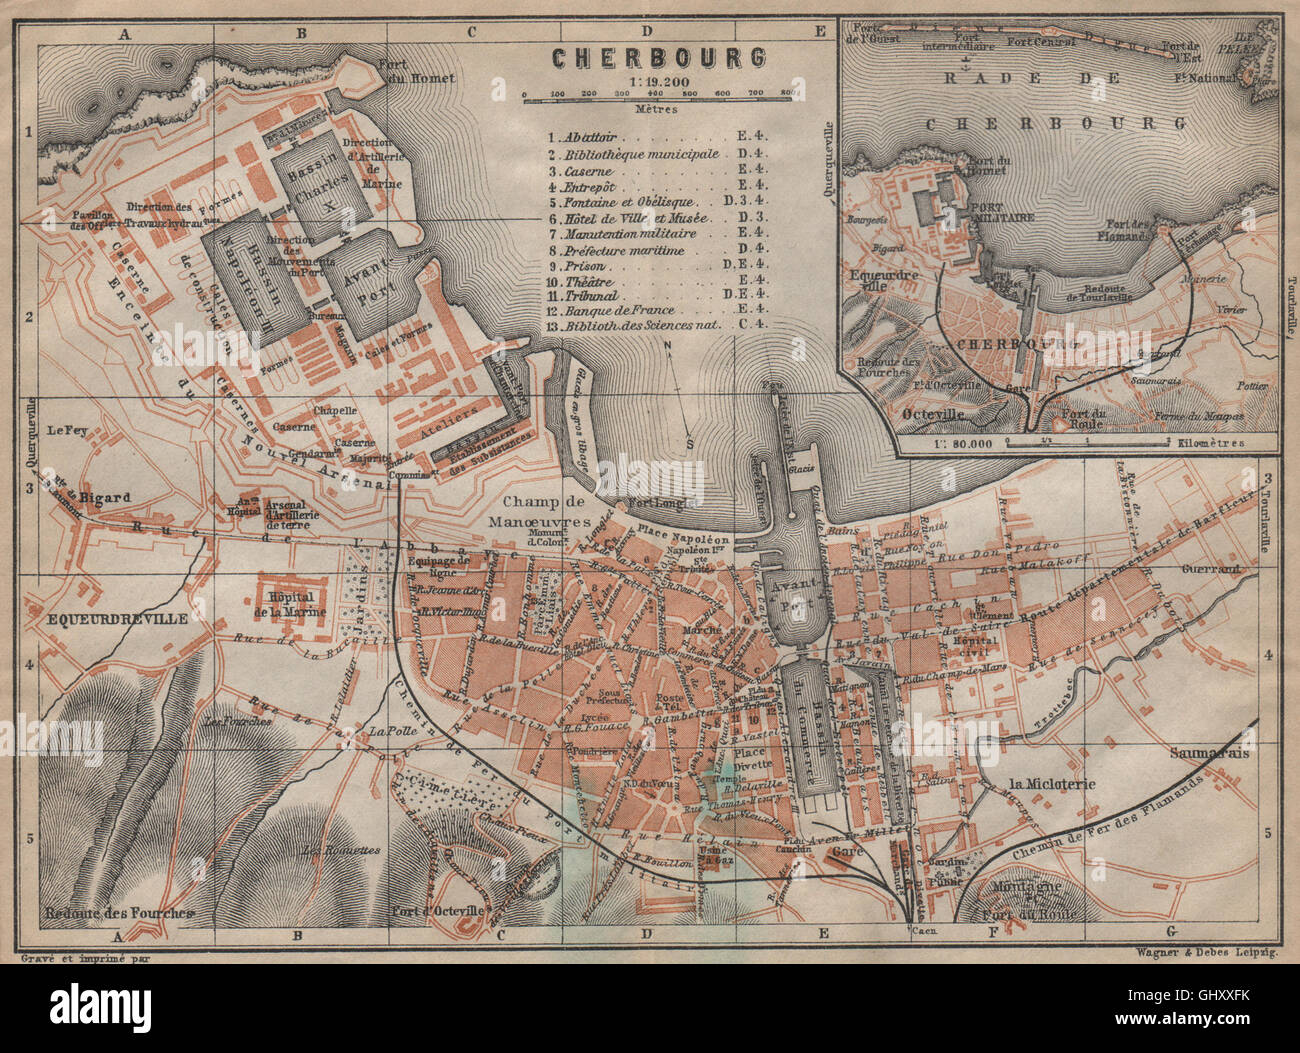 Ville de Cherbourg ville plan de la ville. Manche. Rade de Cherbourg, 1909 Carte du site Banque D'Images